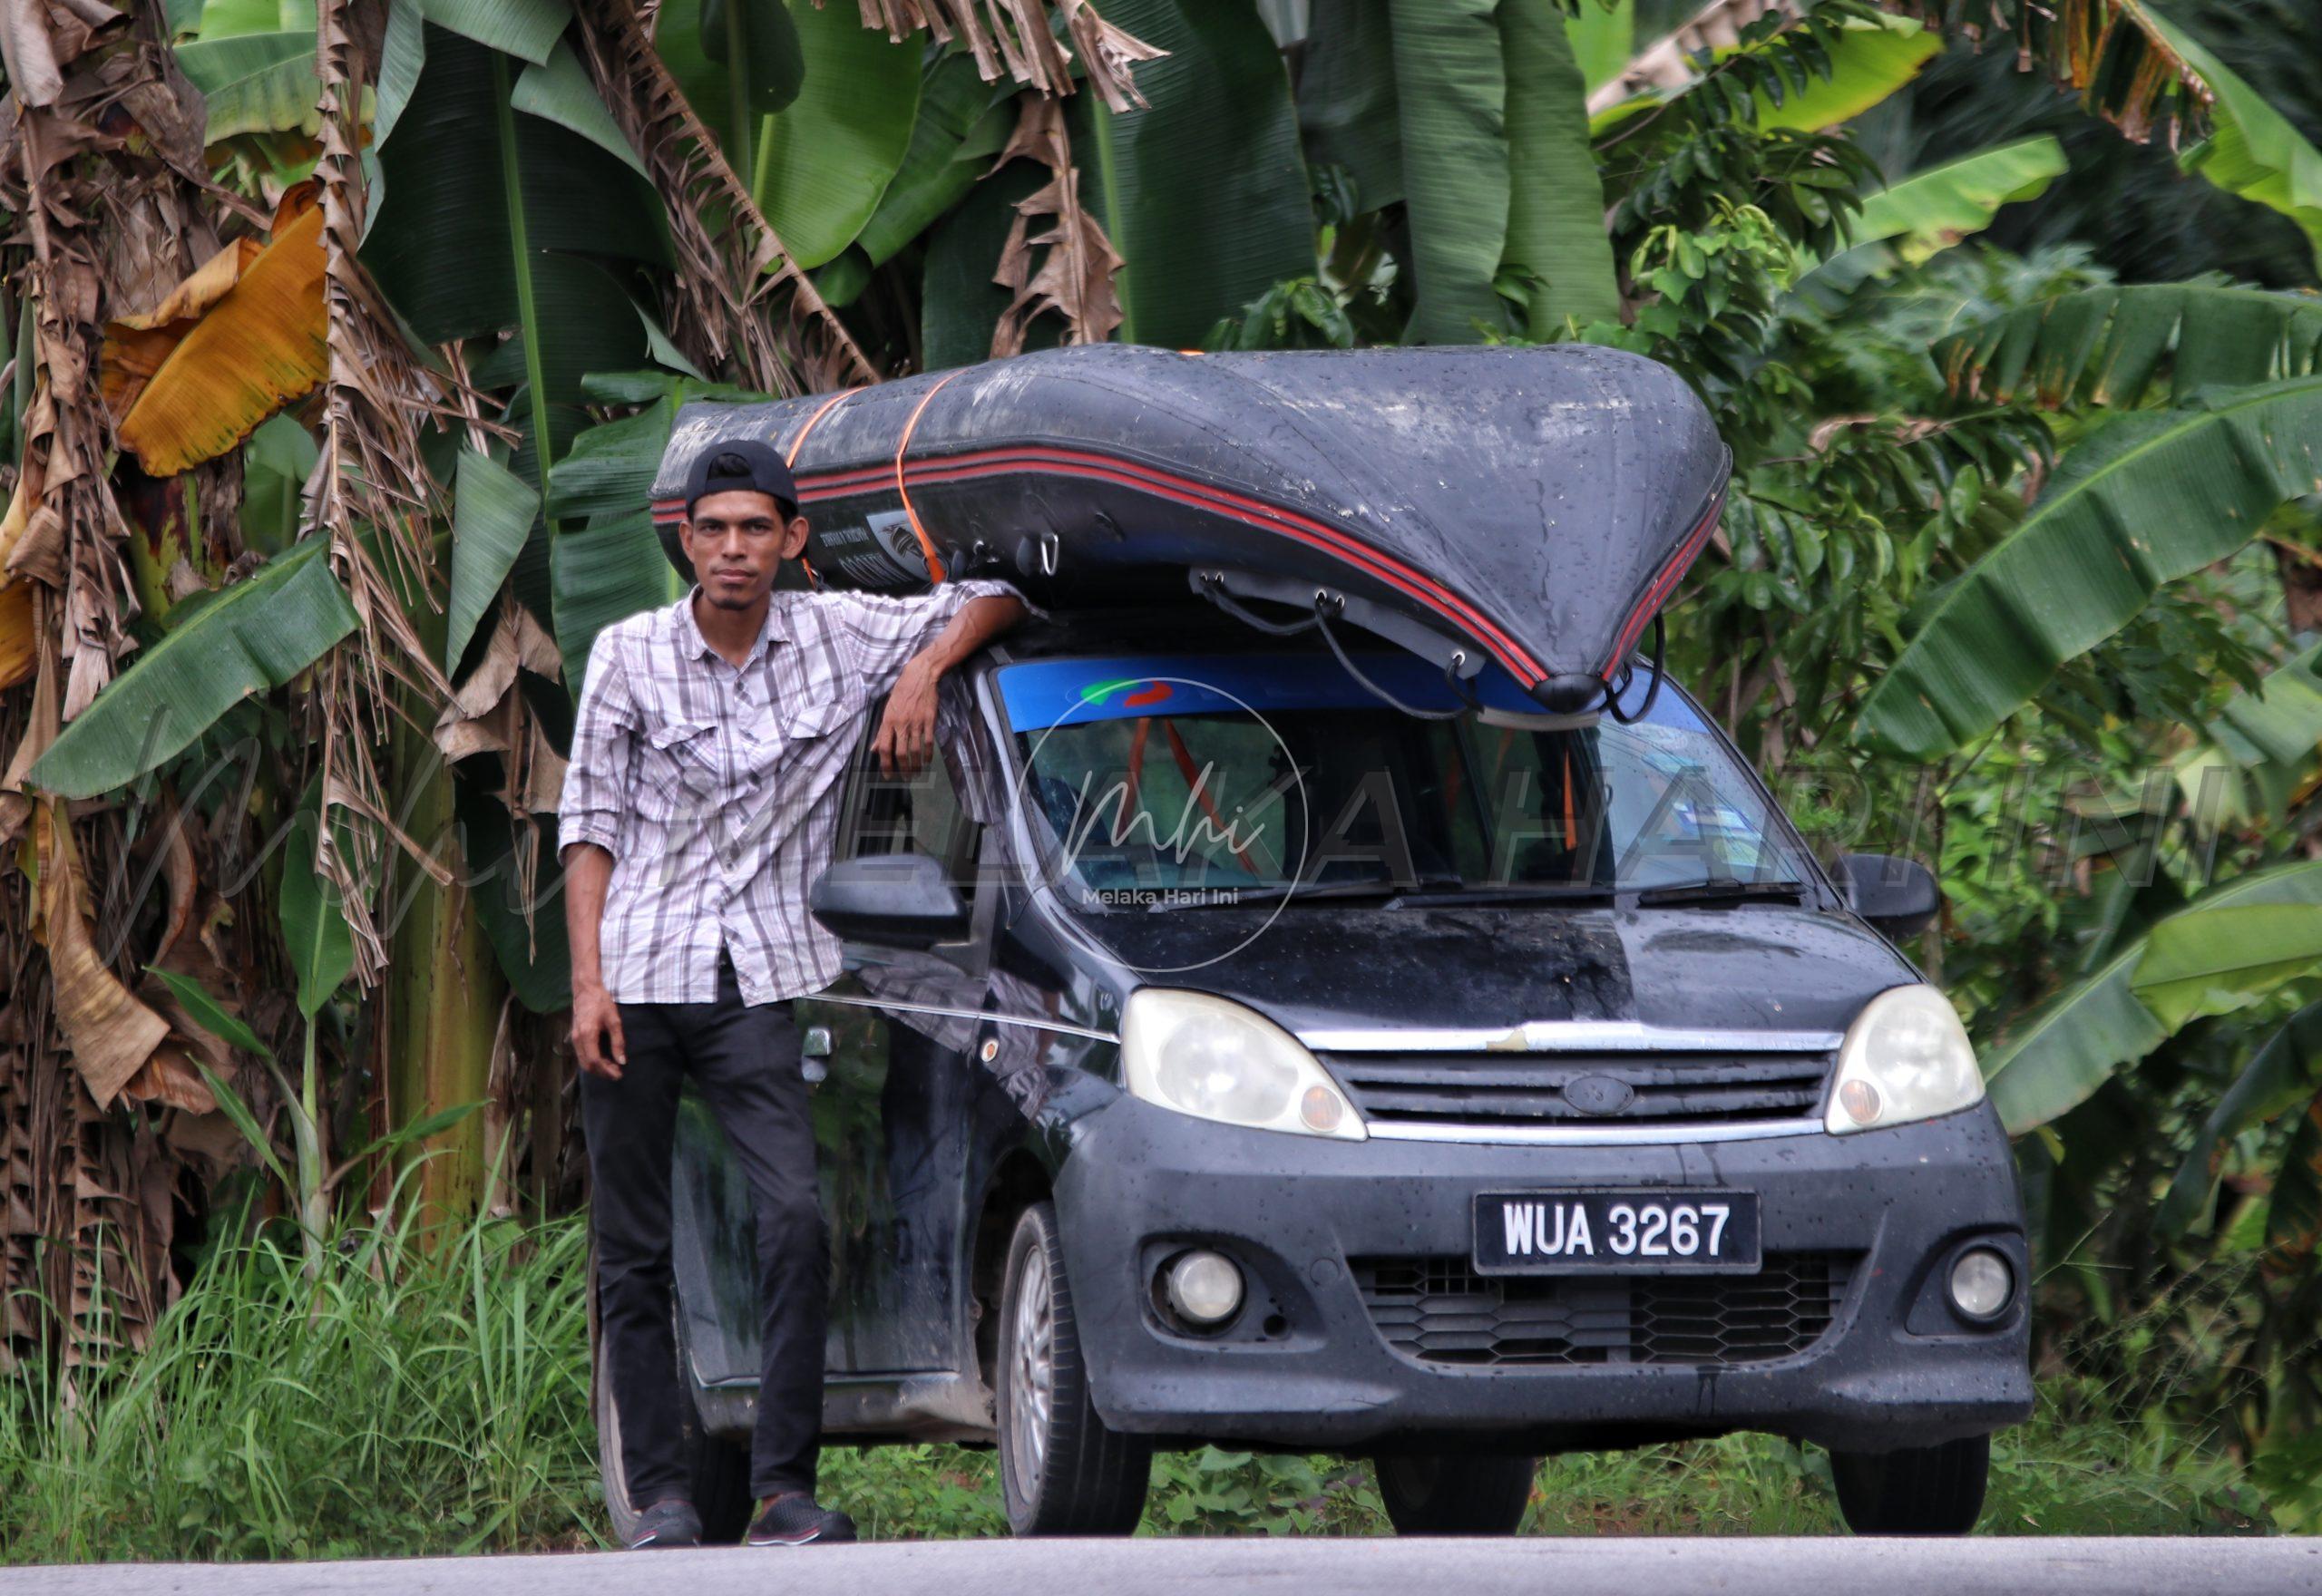 Doakan ‘Abang Viva’ selamat sampai Terengganu